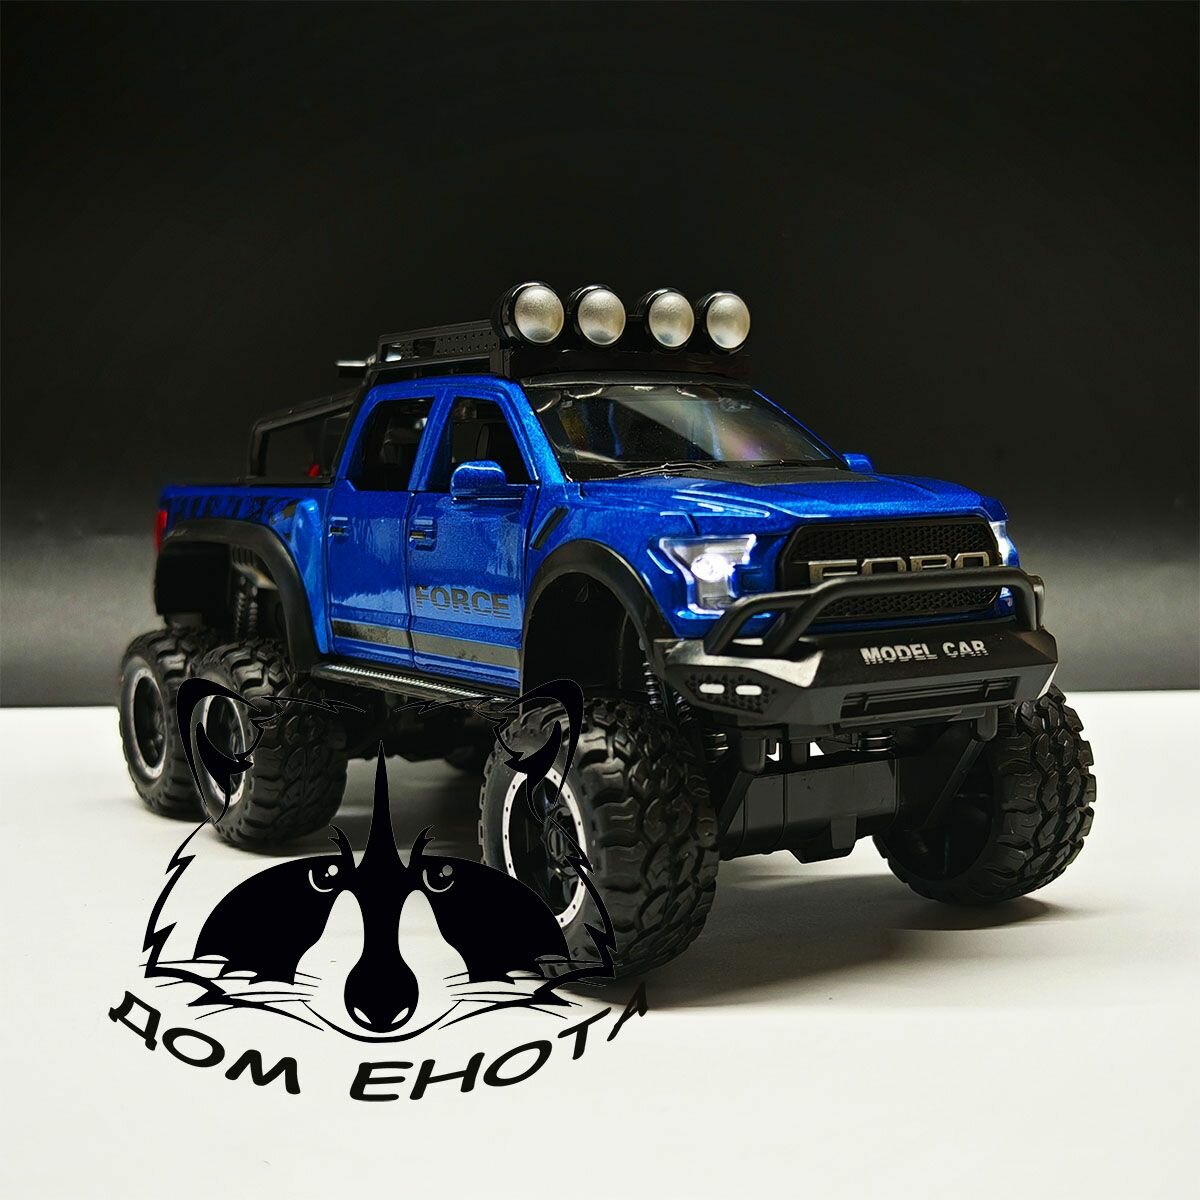 Машинка игрушечная Ford Raptor. Металлическая модель машина Форд Раптор синий 21см. Инерционная игрушка 1:24